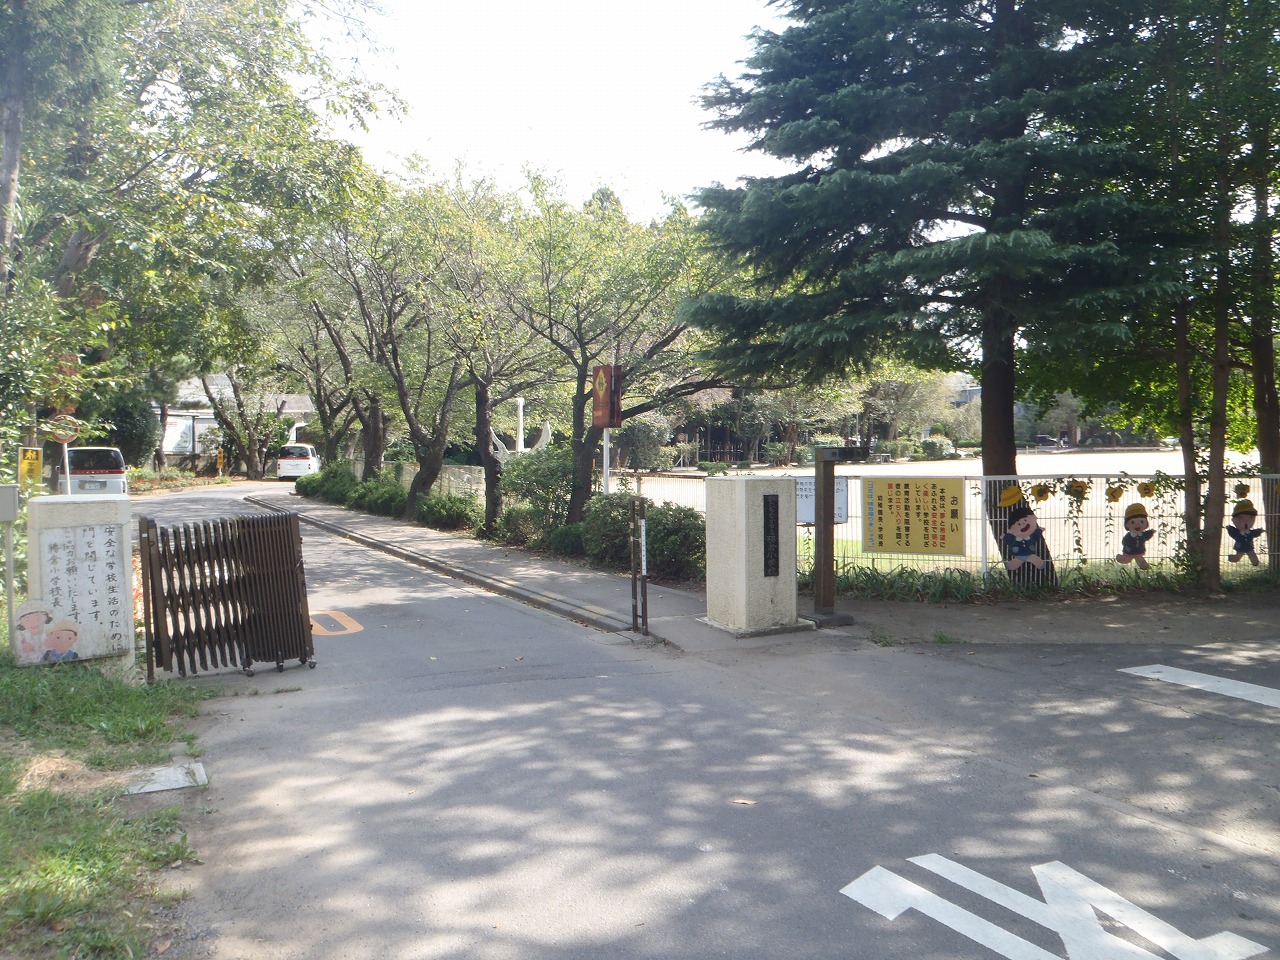 Primary school. 1600m to Hitachinaka Municipal Katsukura elementary school (elementary school)